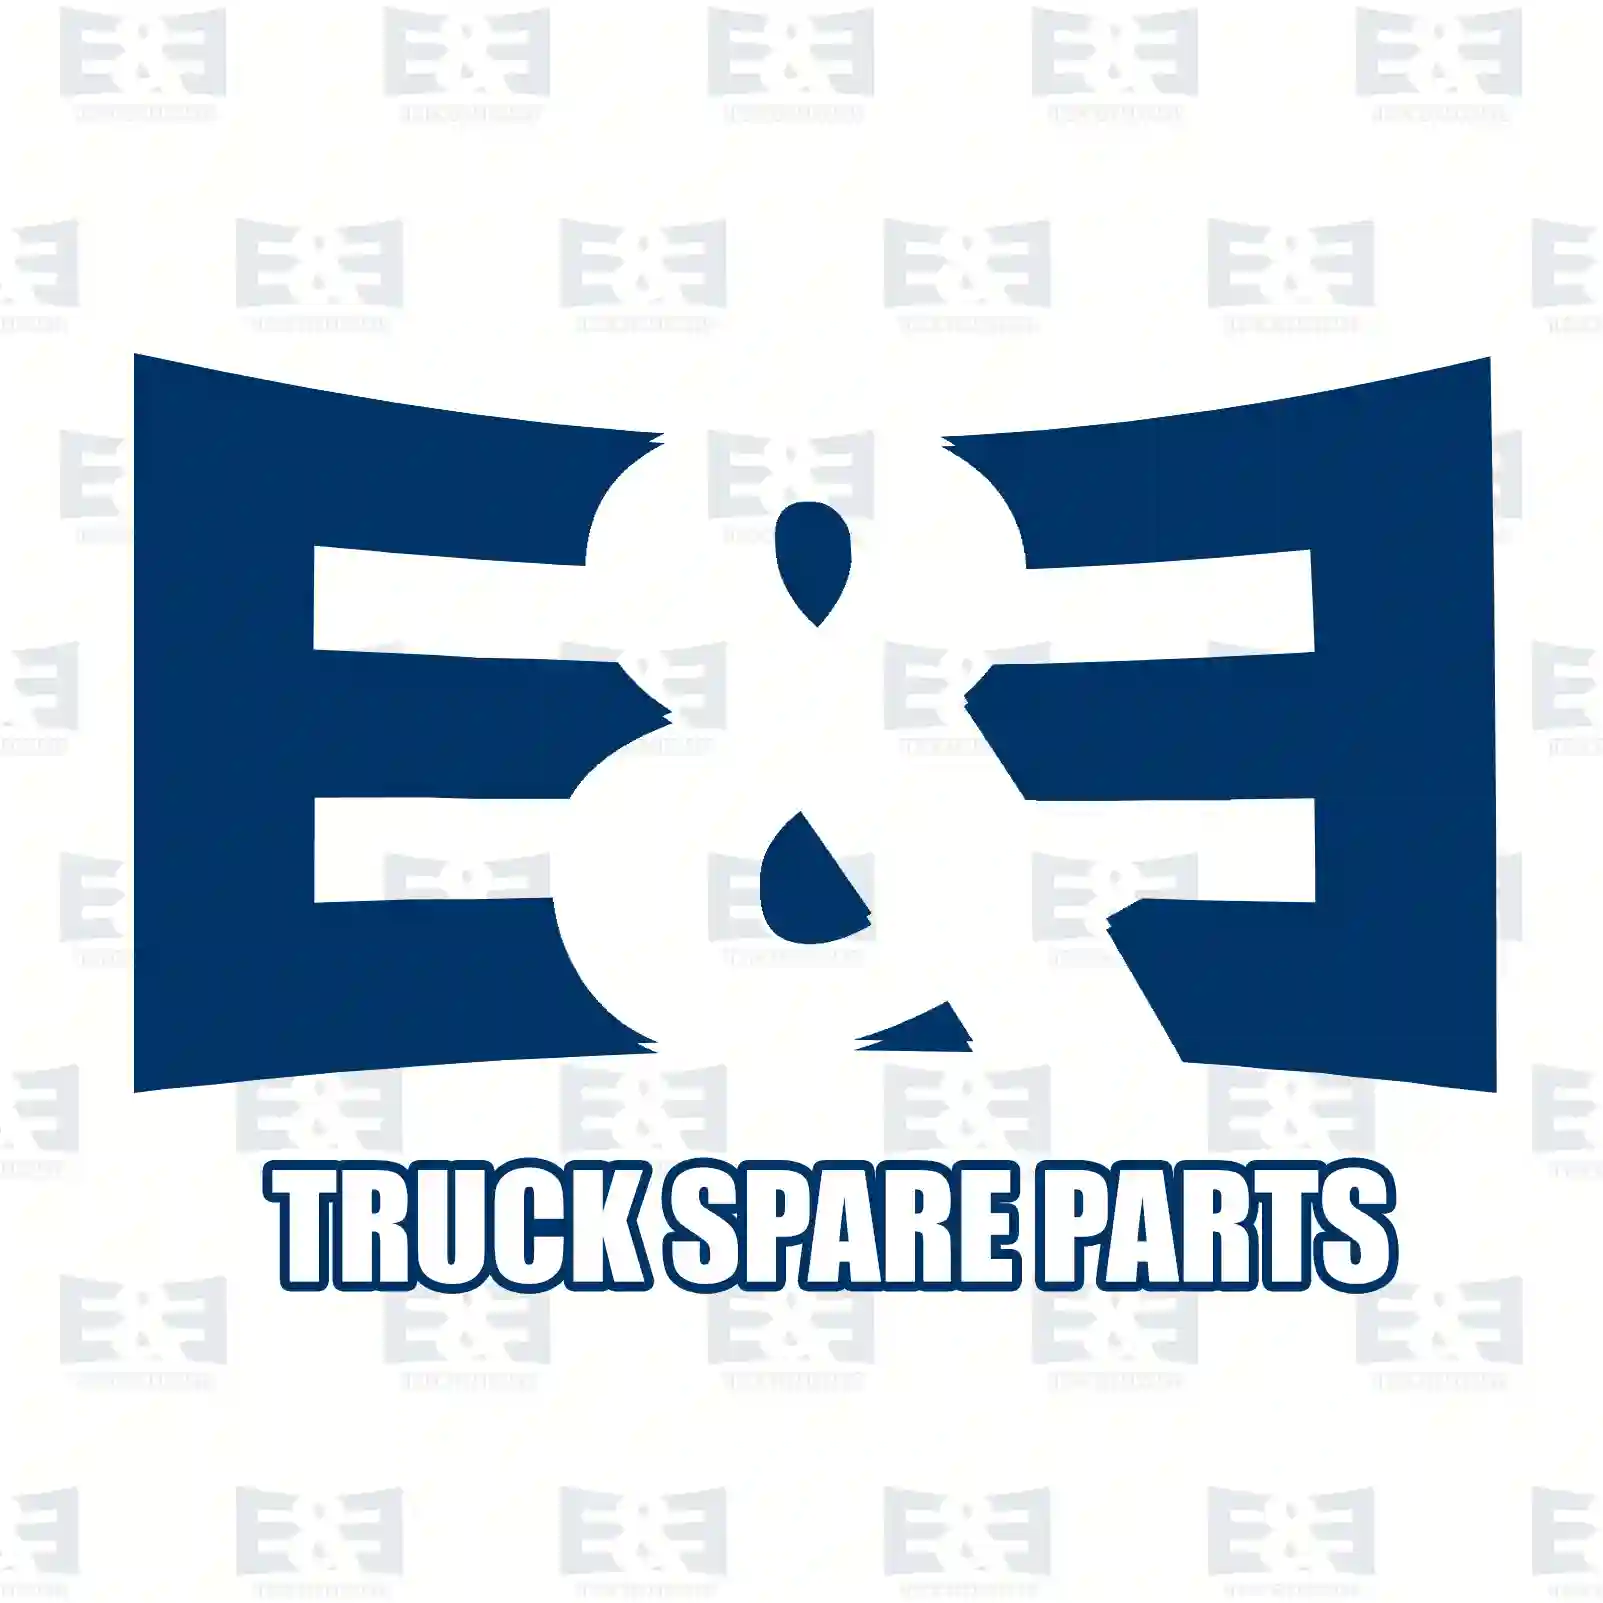 Exhaust brake, complete, 2E2208178, 1406198 ||  2E2208178 E&E Truck Spare Parts | Truck Spare Parts, Auotomotive Spare Parts Exhaust brake, complete, 2E2208178, 1406198 ||  2E2208178 E&E Truck Spare Parts | Truck Spare Parts, Auotomotive Spare Parts